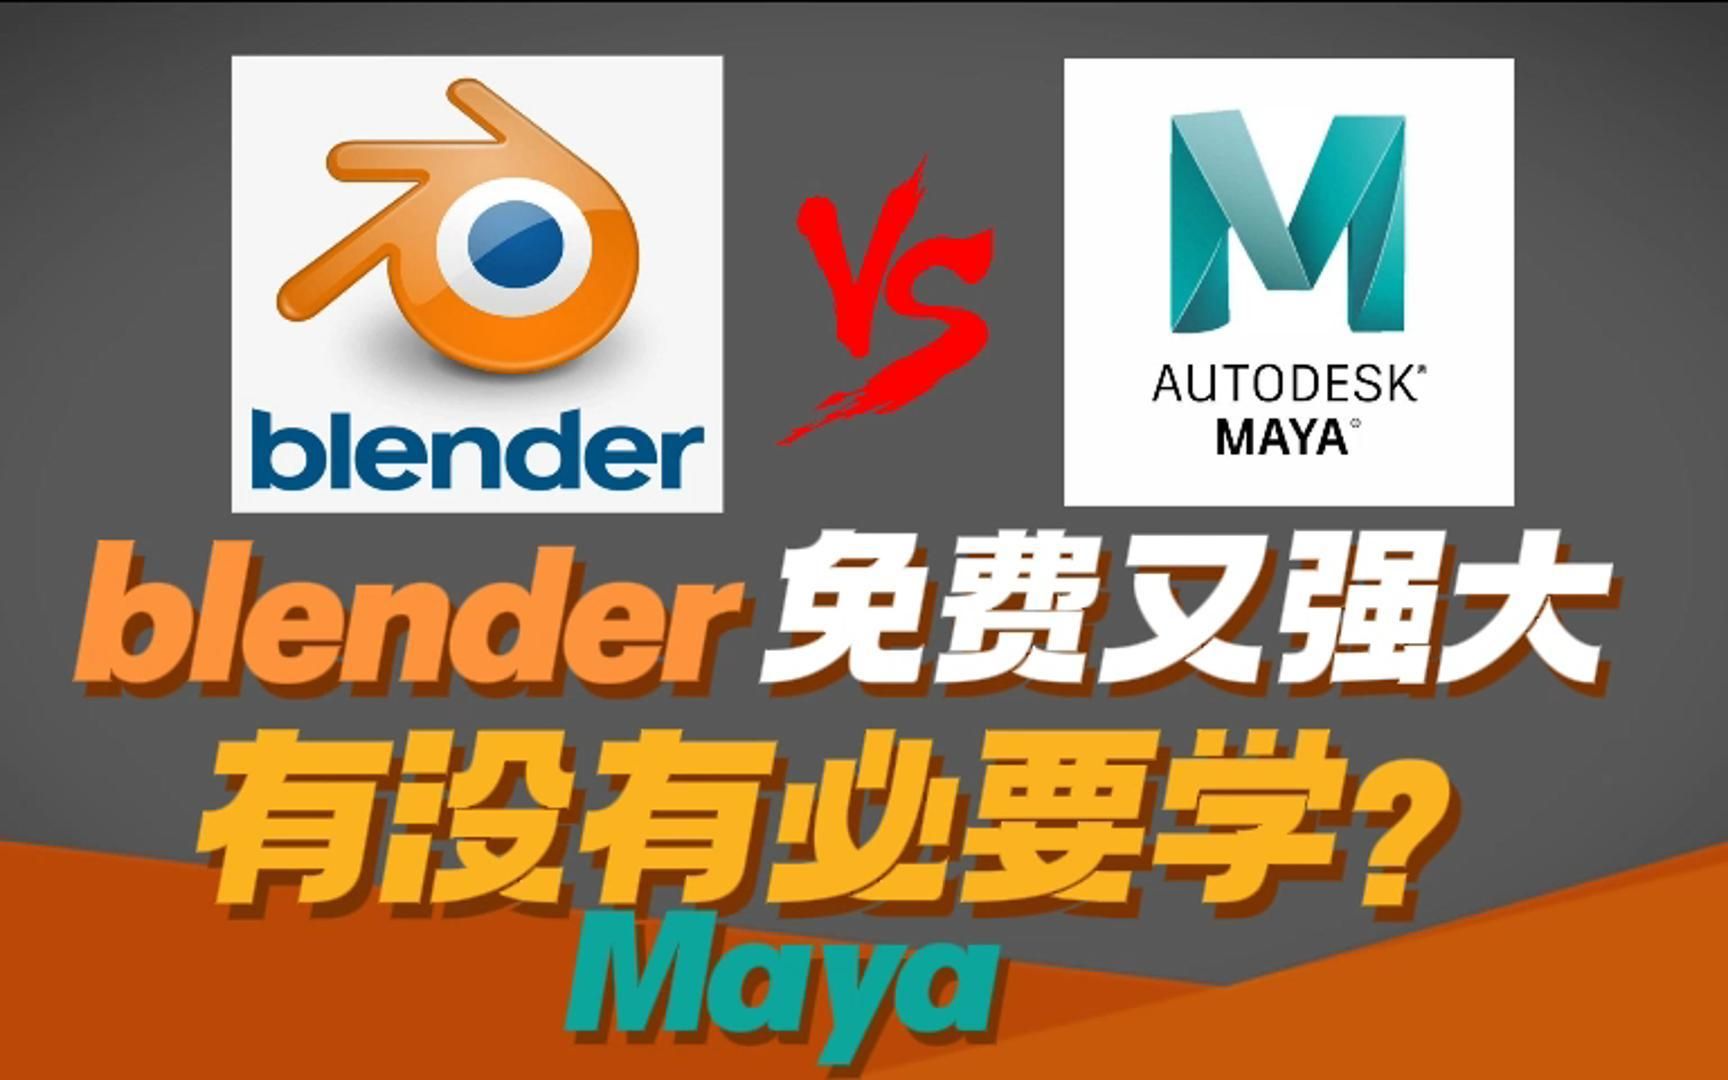 今天跟大家聊一下：Blender 免费又强大，我们有没有必要学习 Maya？